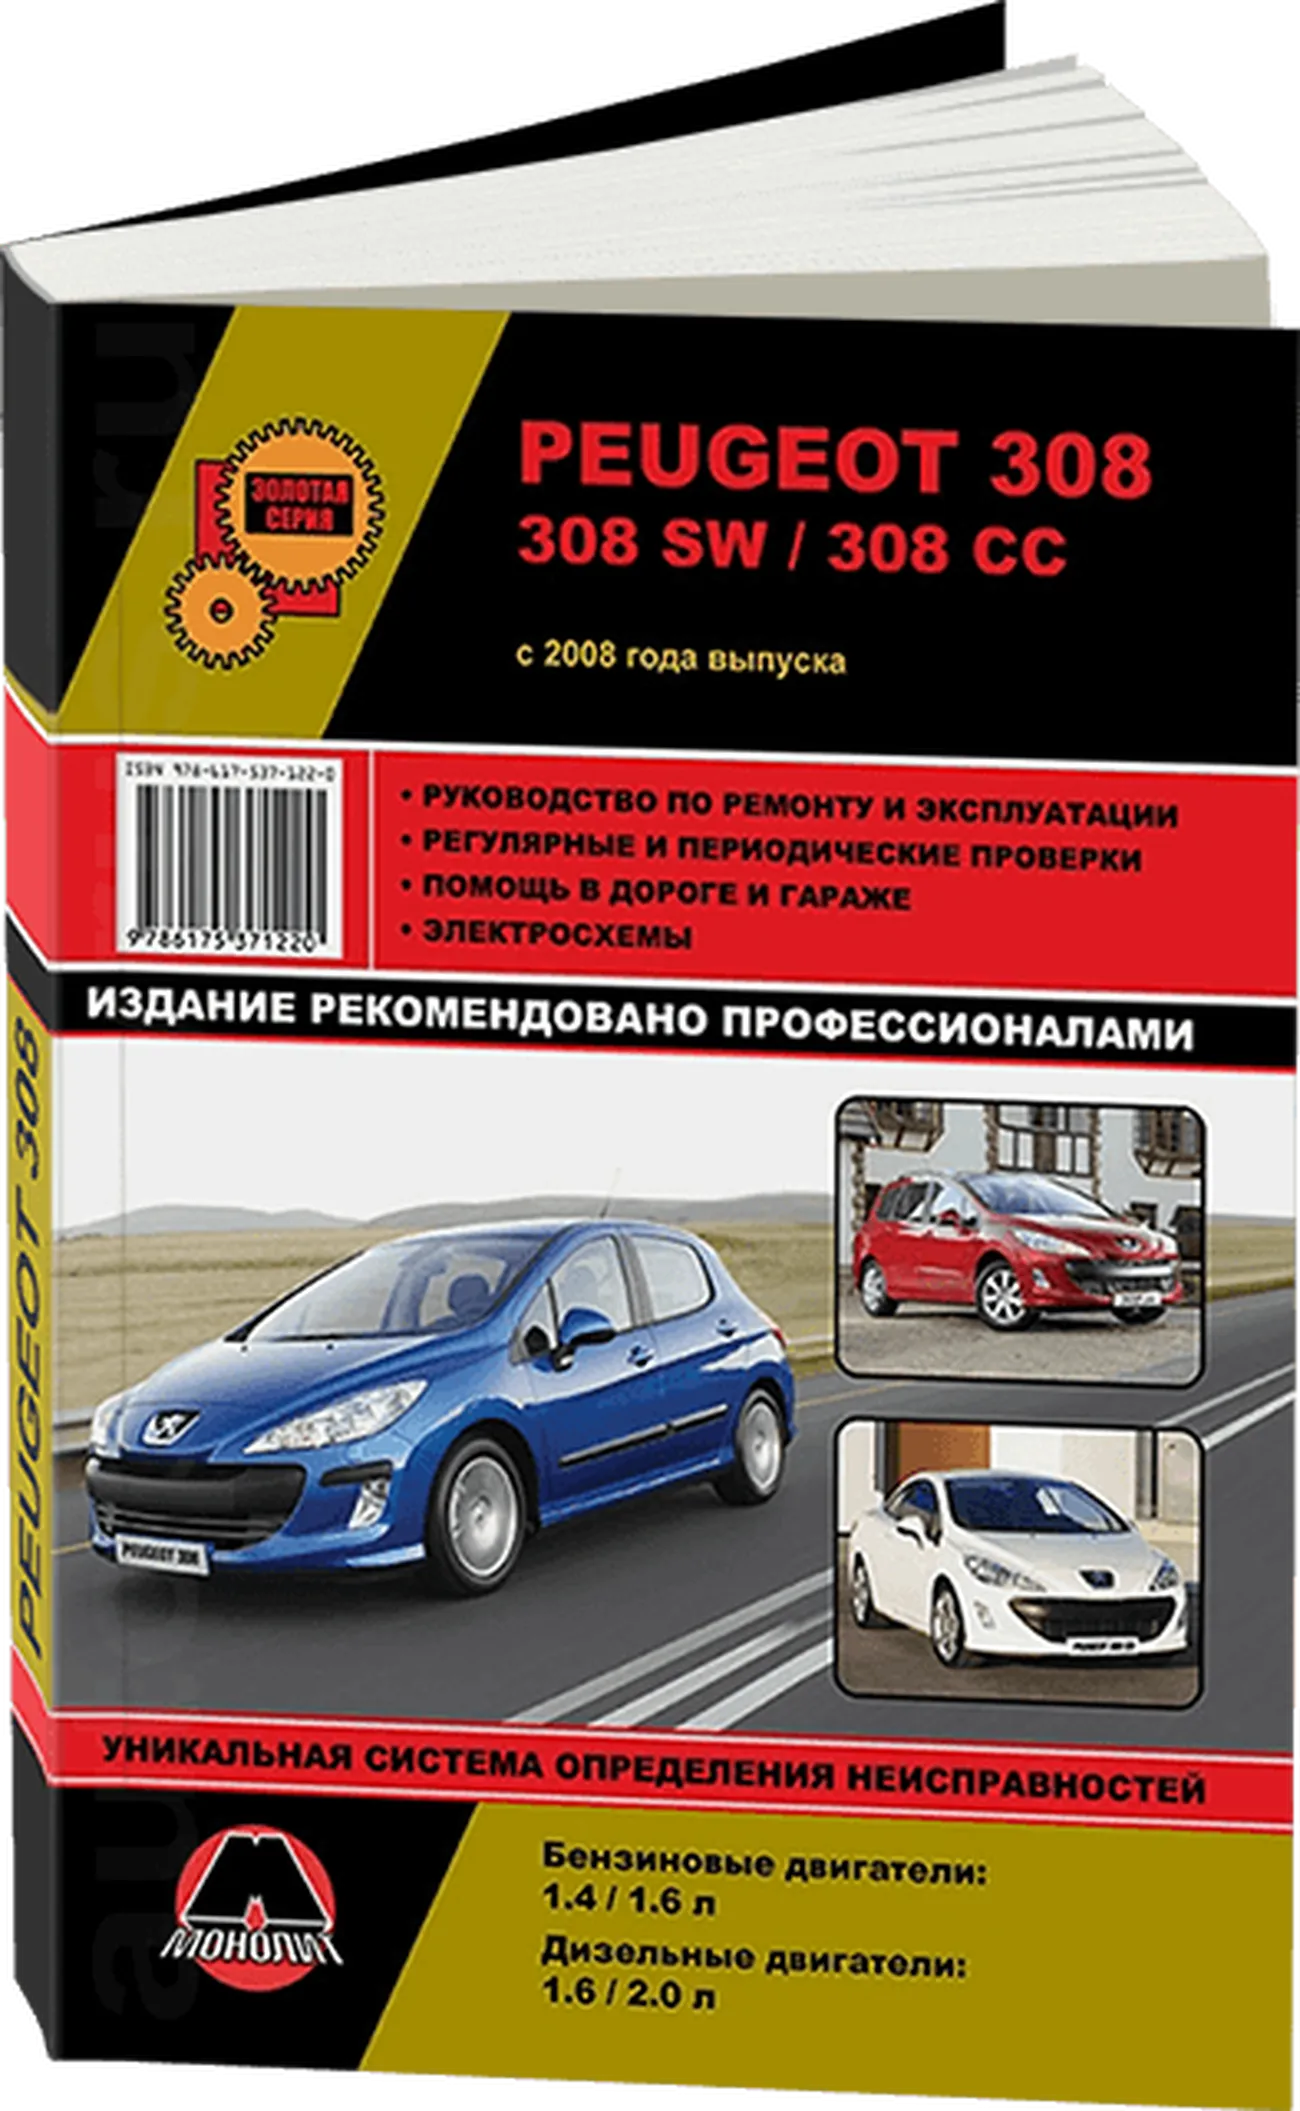 Книга: PEUGEOT 308 / 308 SW / 308 CC (б , д) с 2008 г.в. рем., экспл., то, сер. ЗС | Монолит